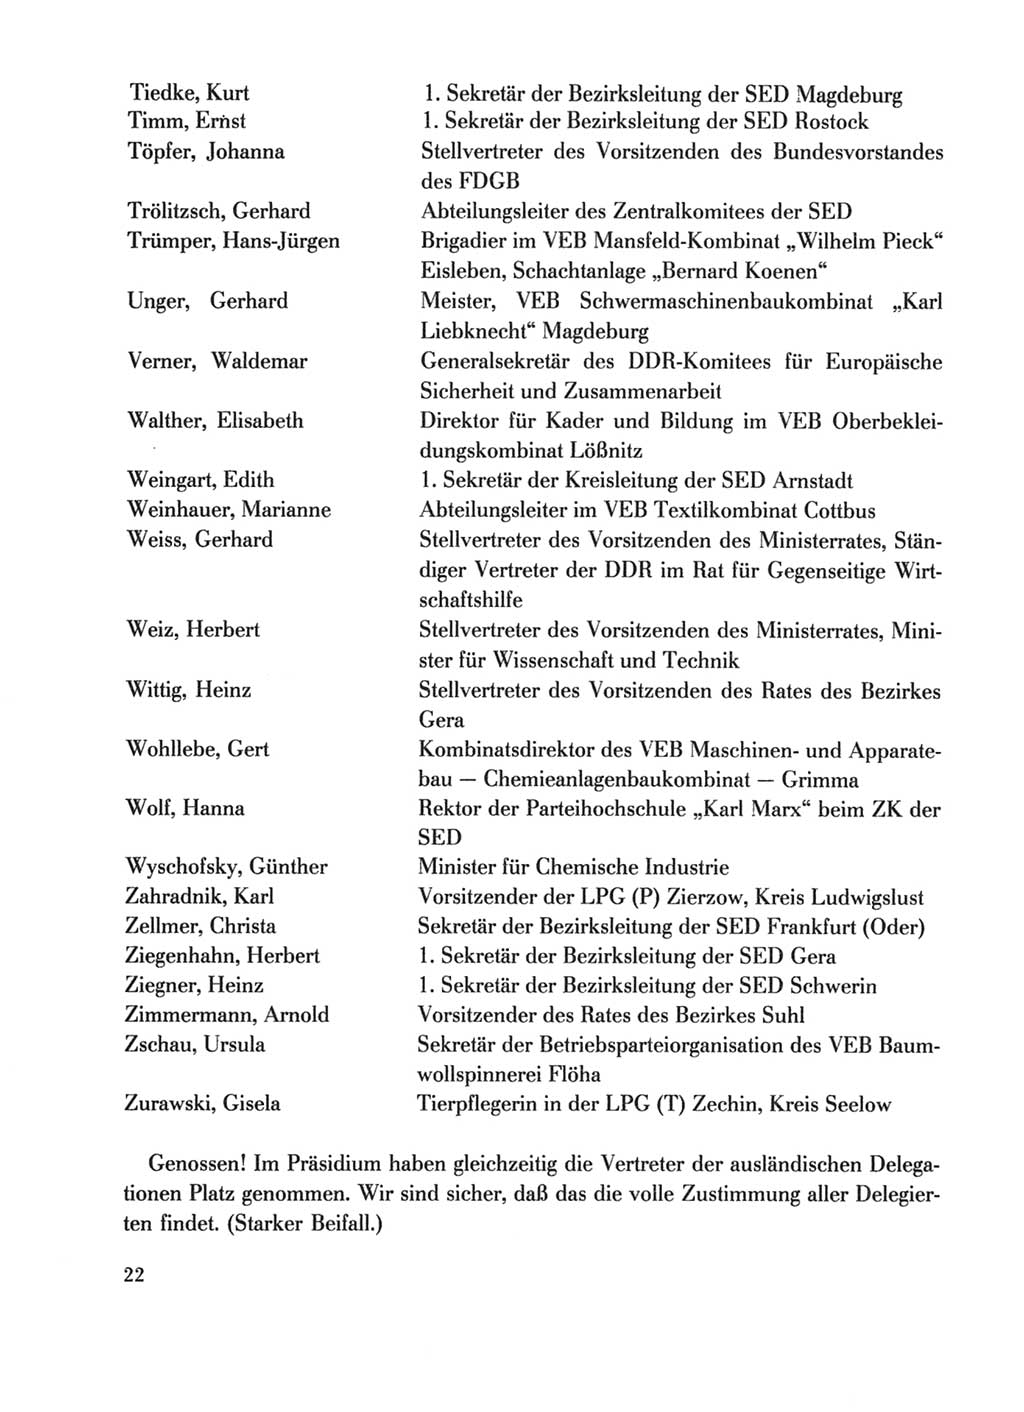 Protokoll der Verhandlungen des Ⅹ. Parteitages der Sozialistischen Einheitspartei Deutschlands (SED) [Deutsche Demokratische Republik (DDR)] 1981, Band 1, Seite 22 (Prot. Verh. Ⅹ. PT SED DDR 1981, Bd. 1, S. 22)